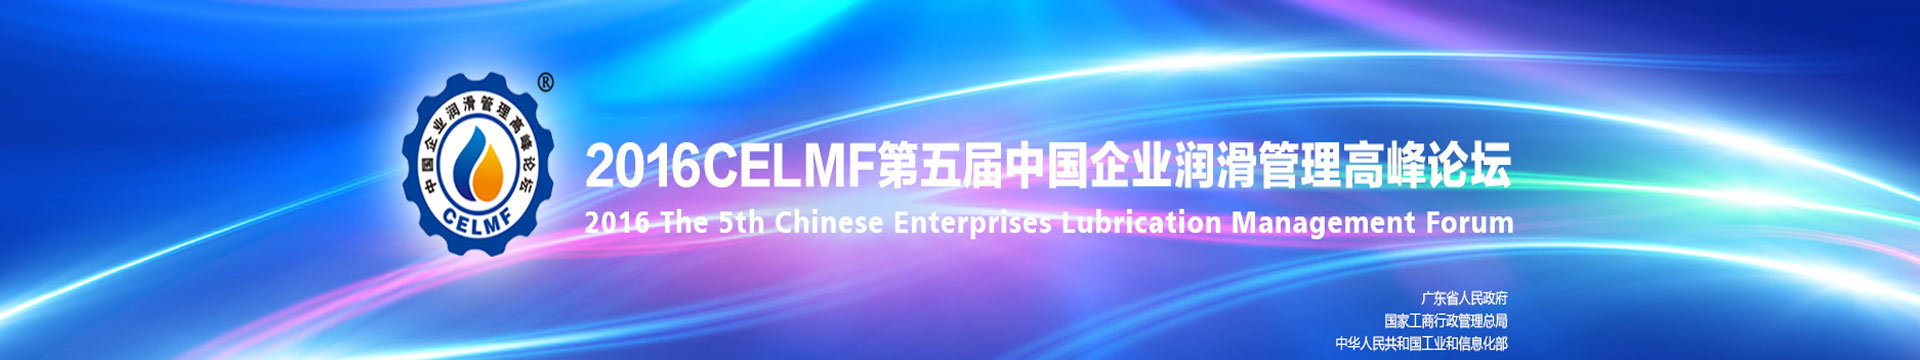 2016第五届中国企业润滑管理高峰论坛（2016 CELMF ）